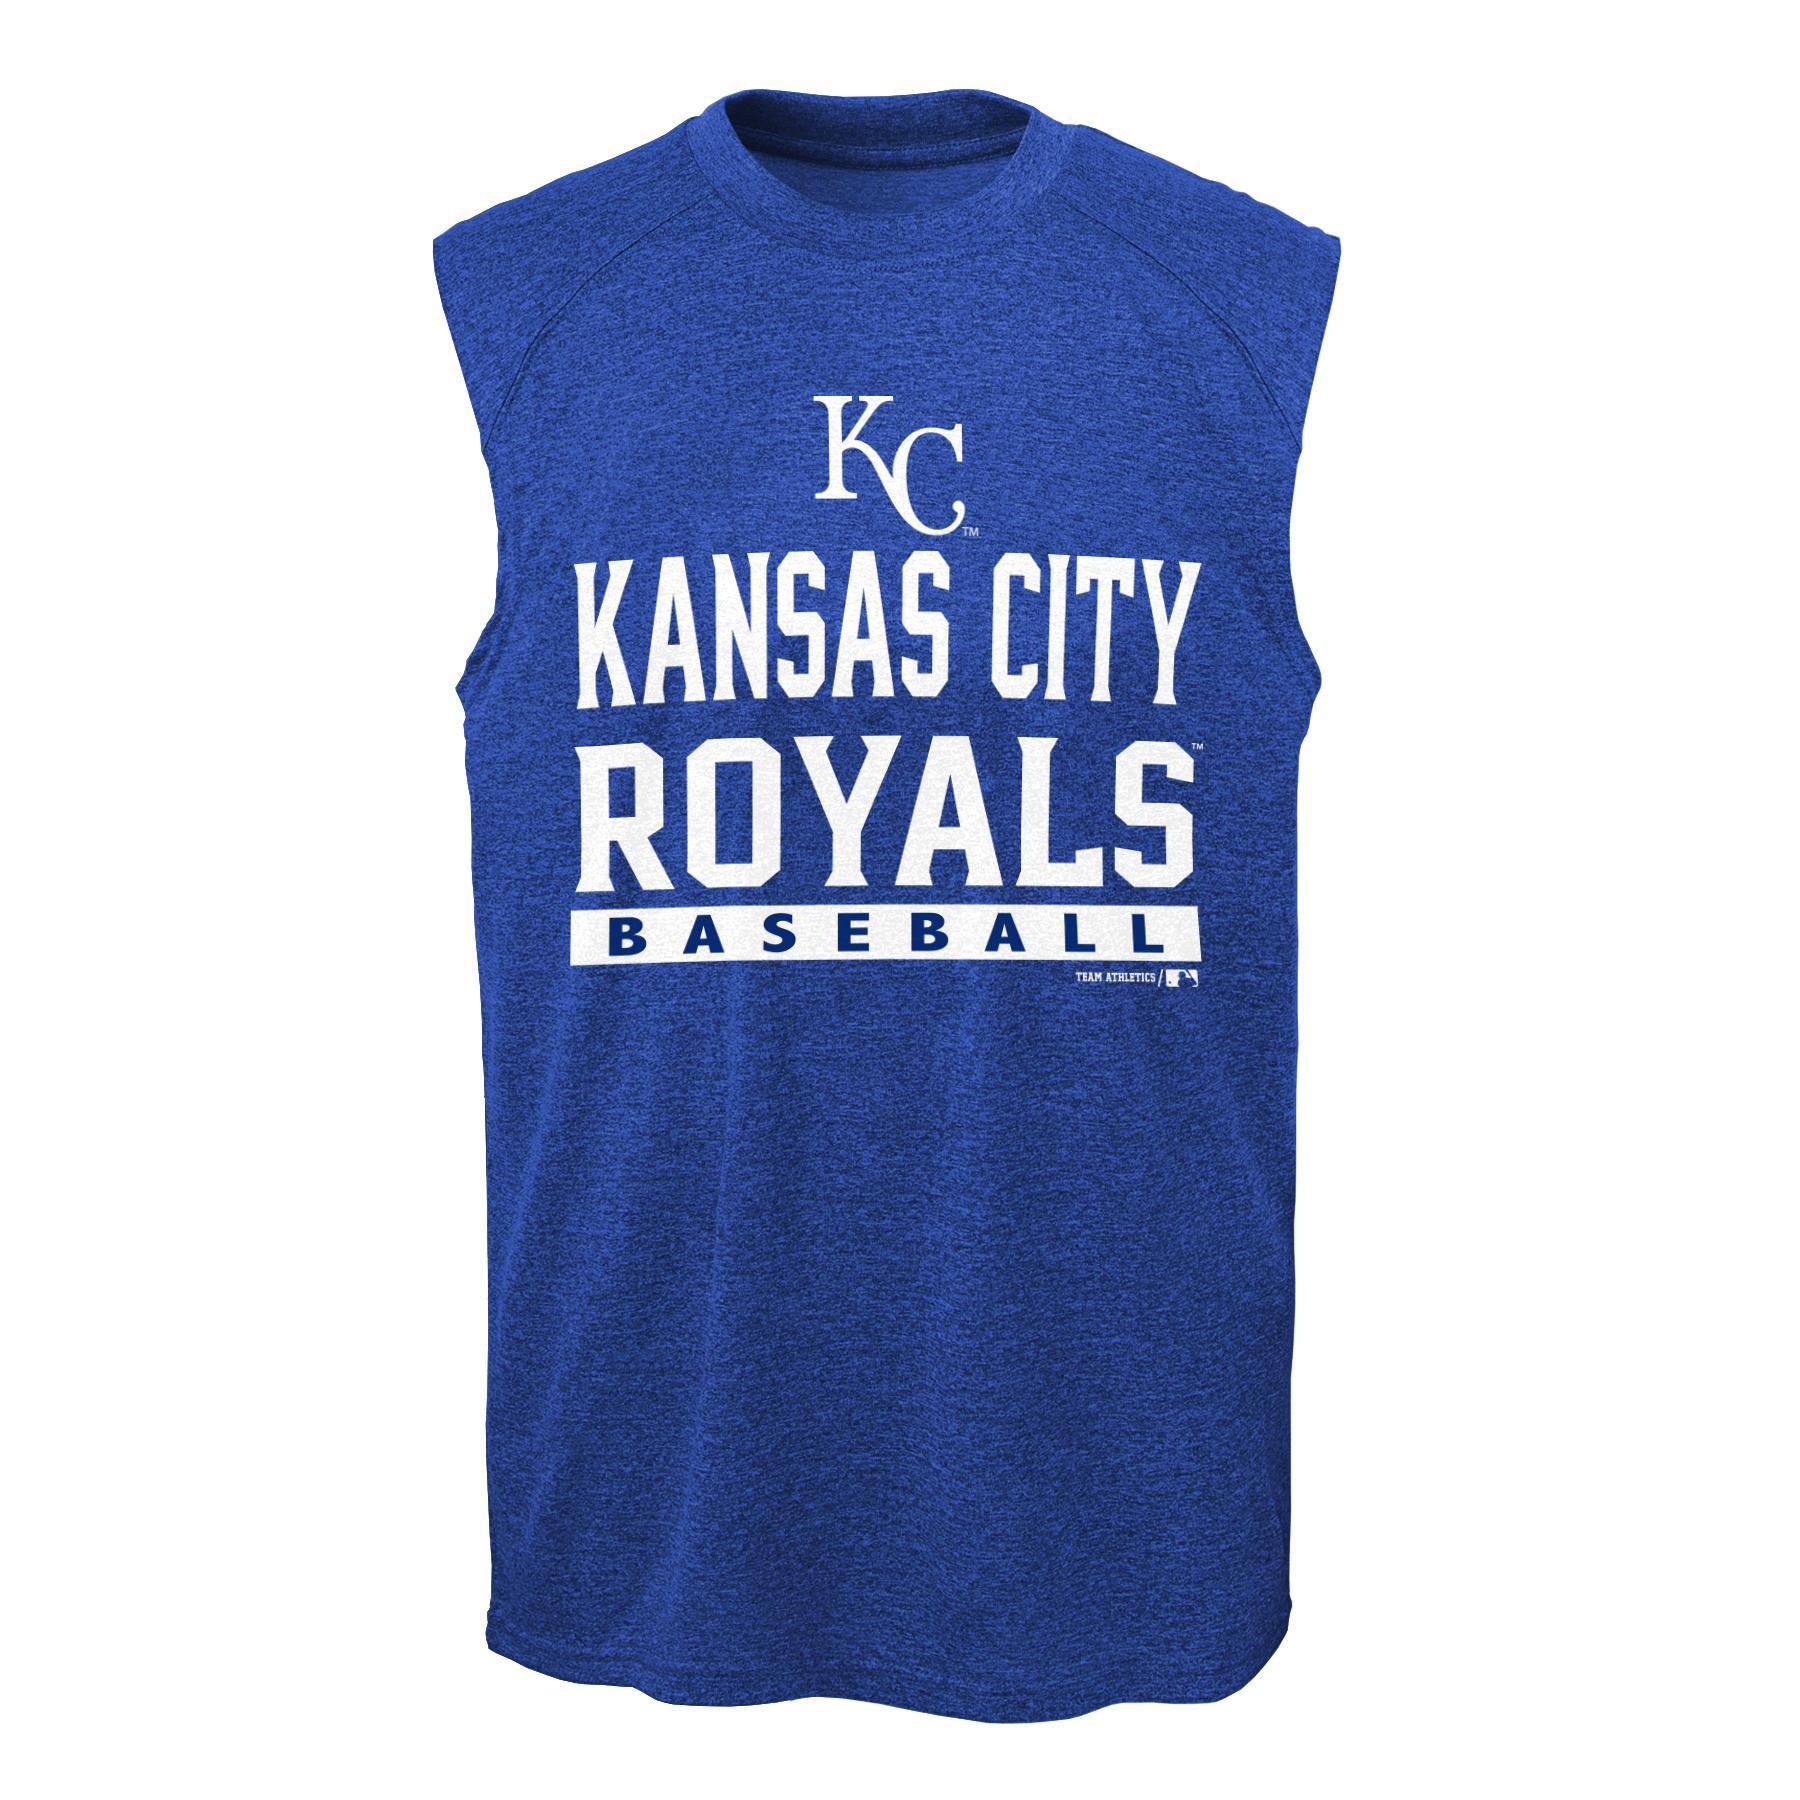 MLB Boy's Muscle Shirt - Kansas City Royals